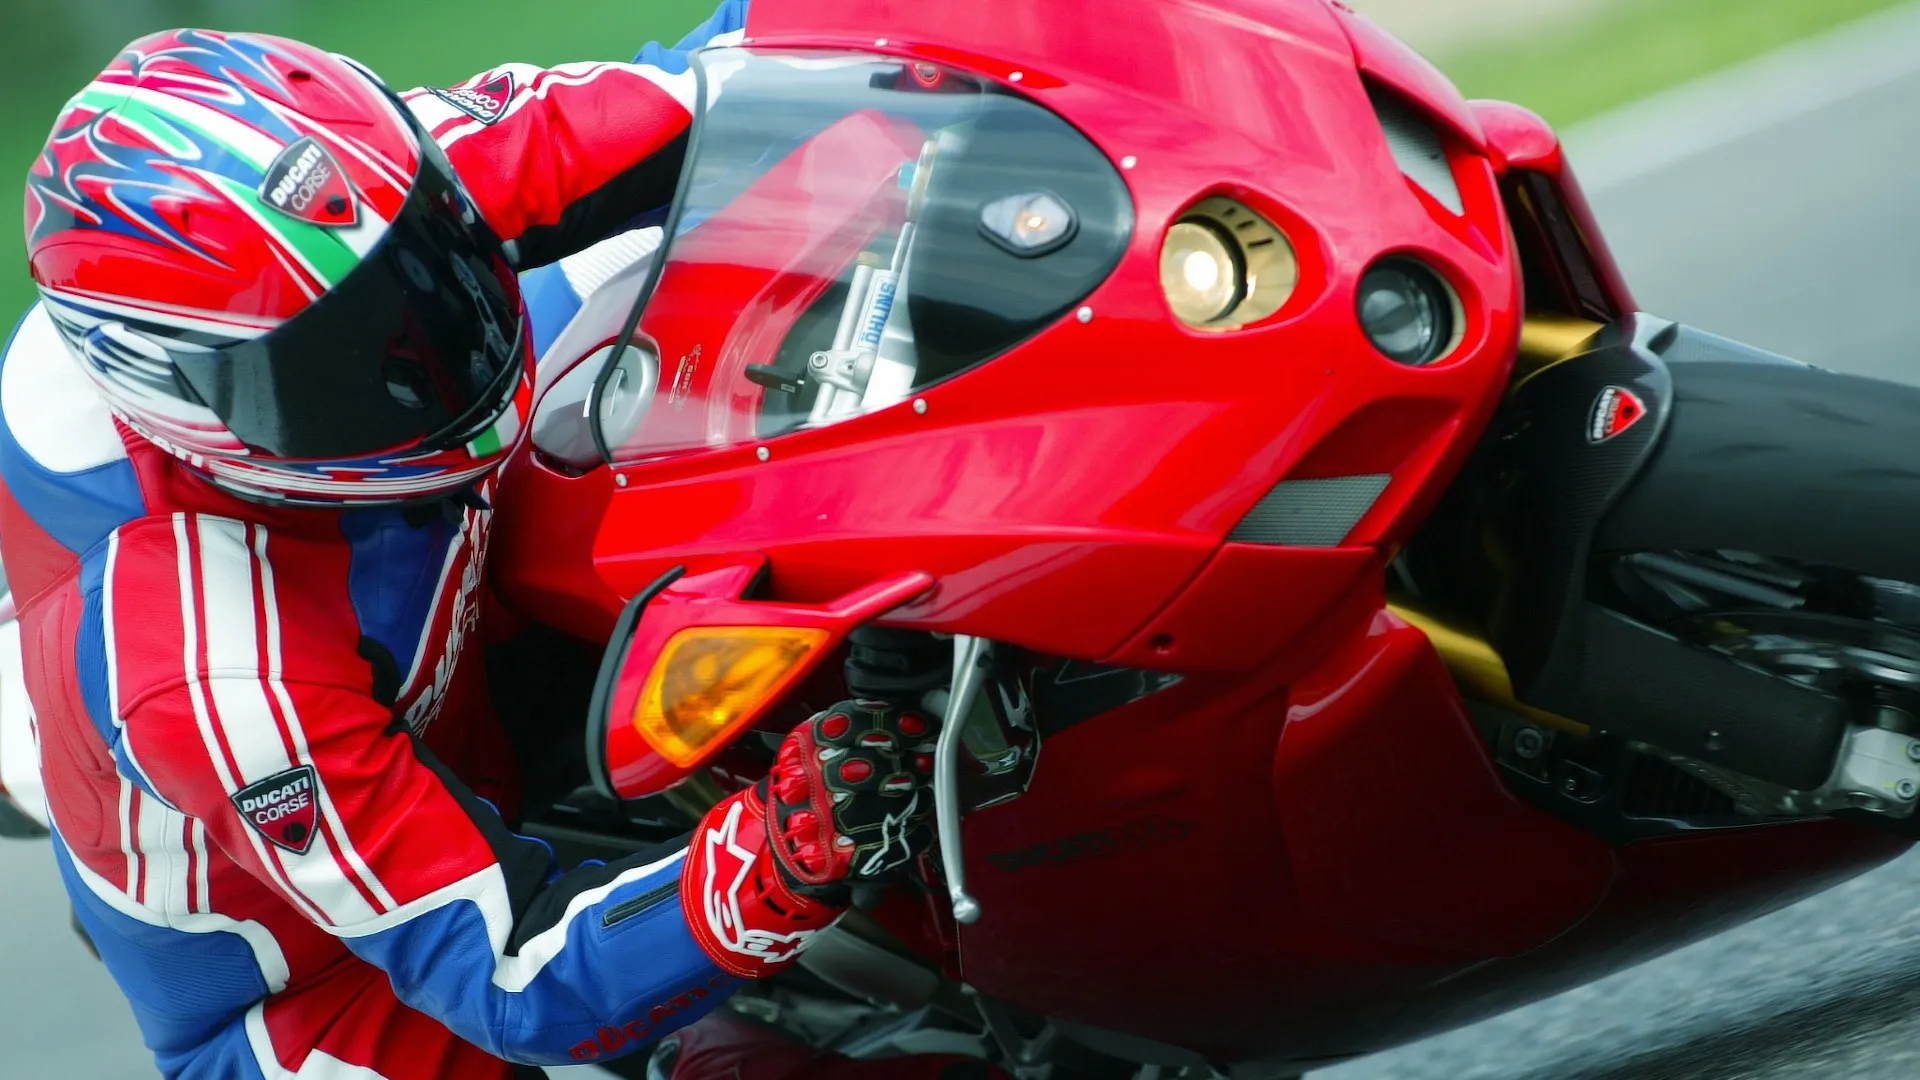 Moto del día: Ducati 999 R